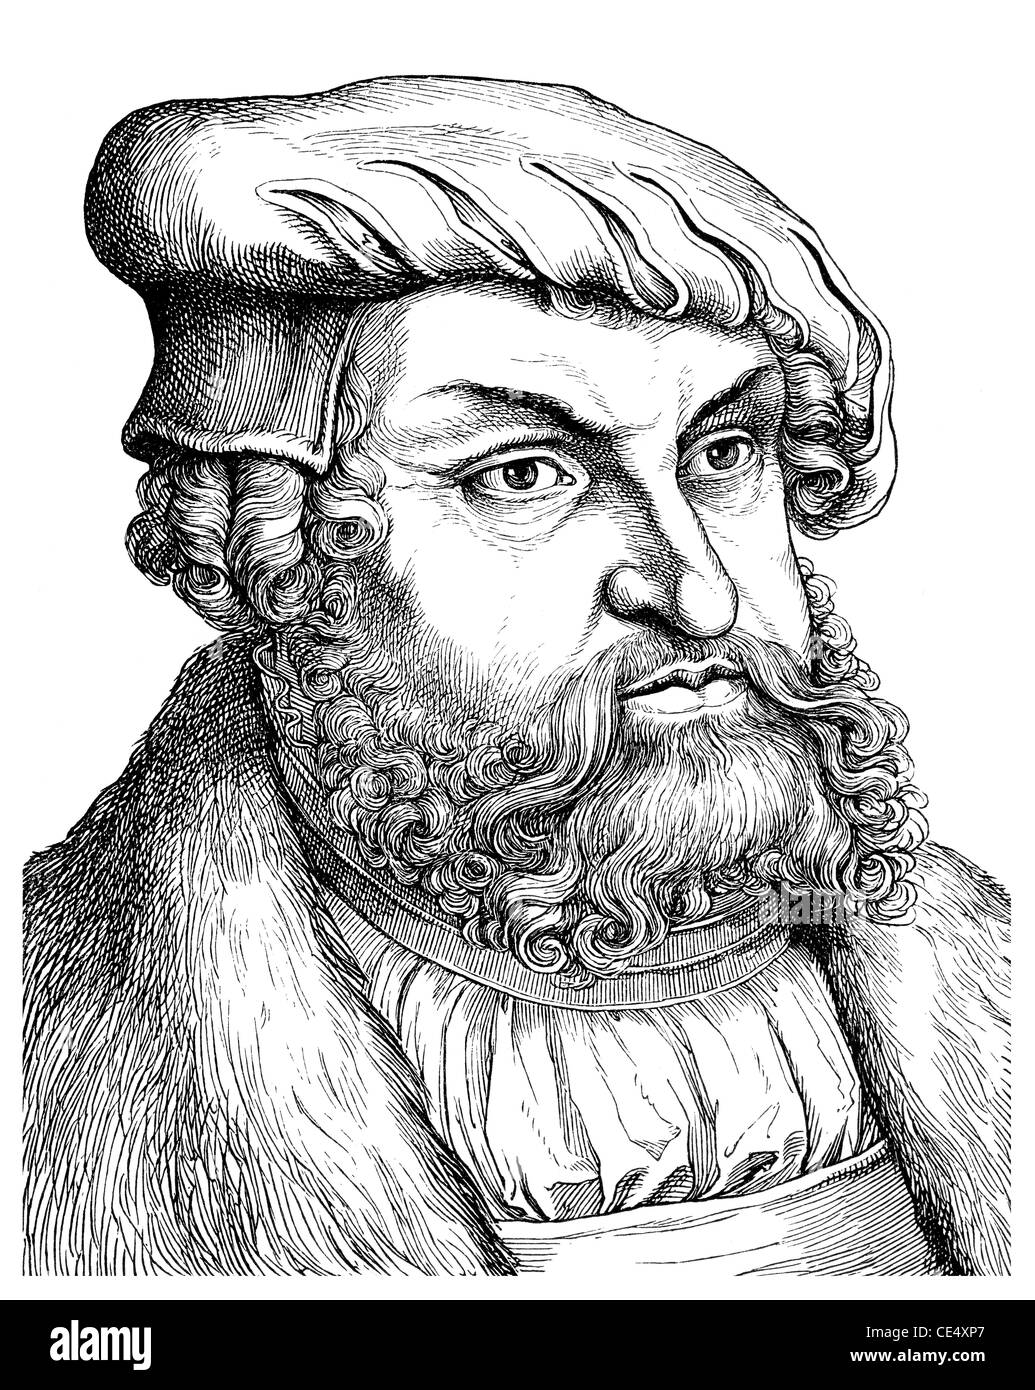 Johann i saldi, 1468 - 1532, Elettore di Sassonia, Johann der Beständige, 1468 - 1532, Kurfürst von Sachsen Foto Stock